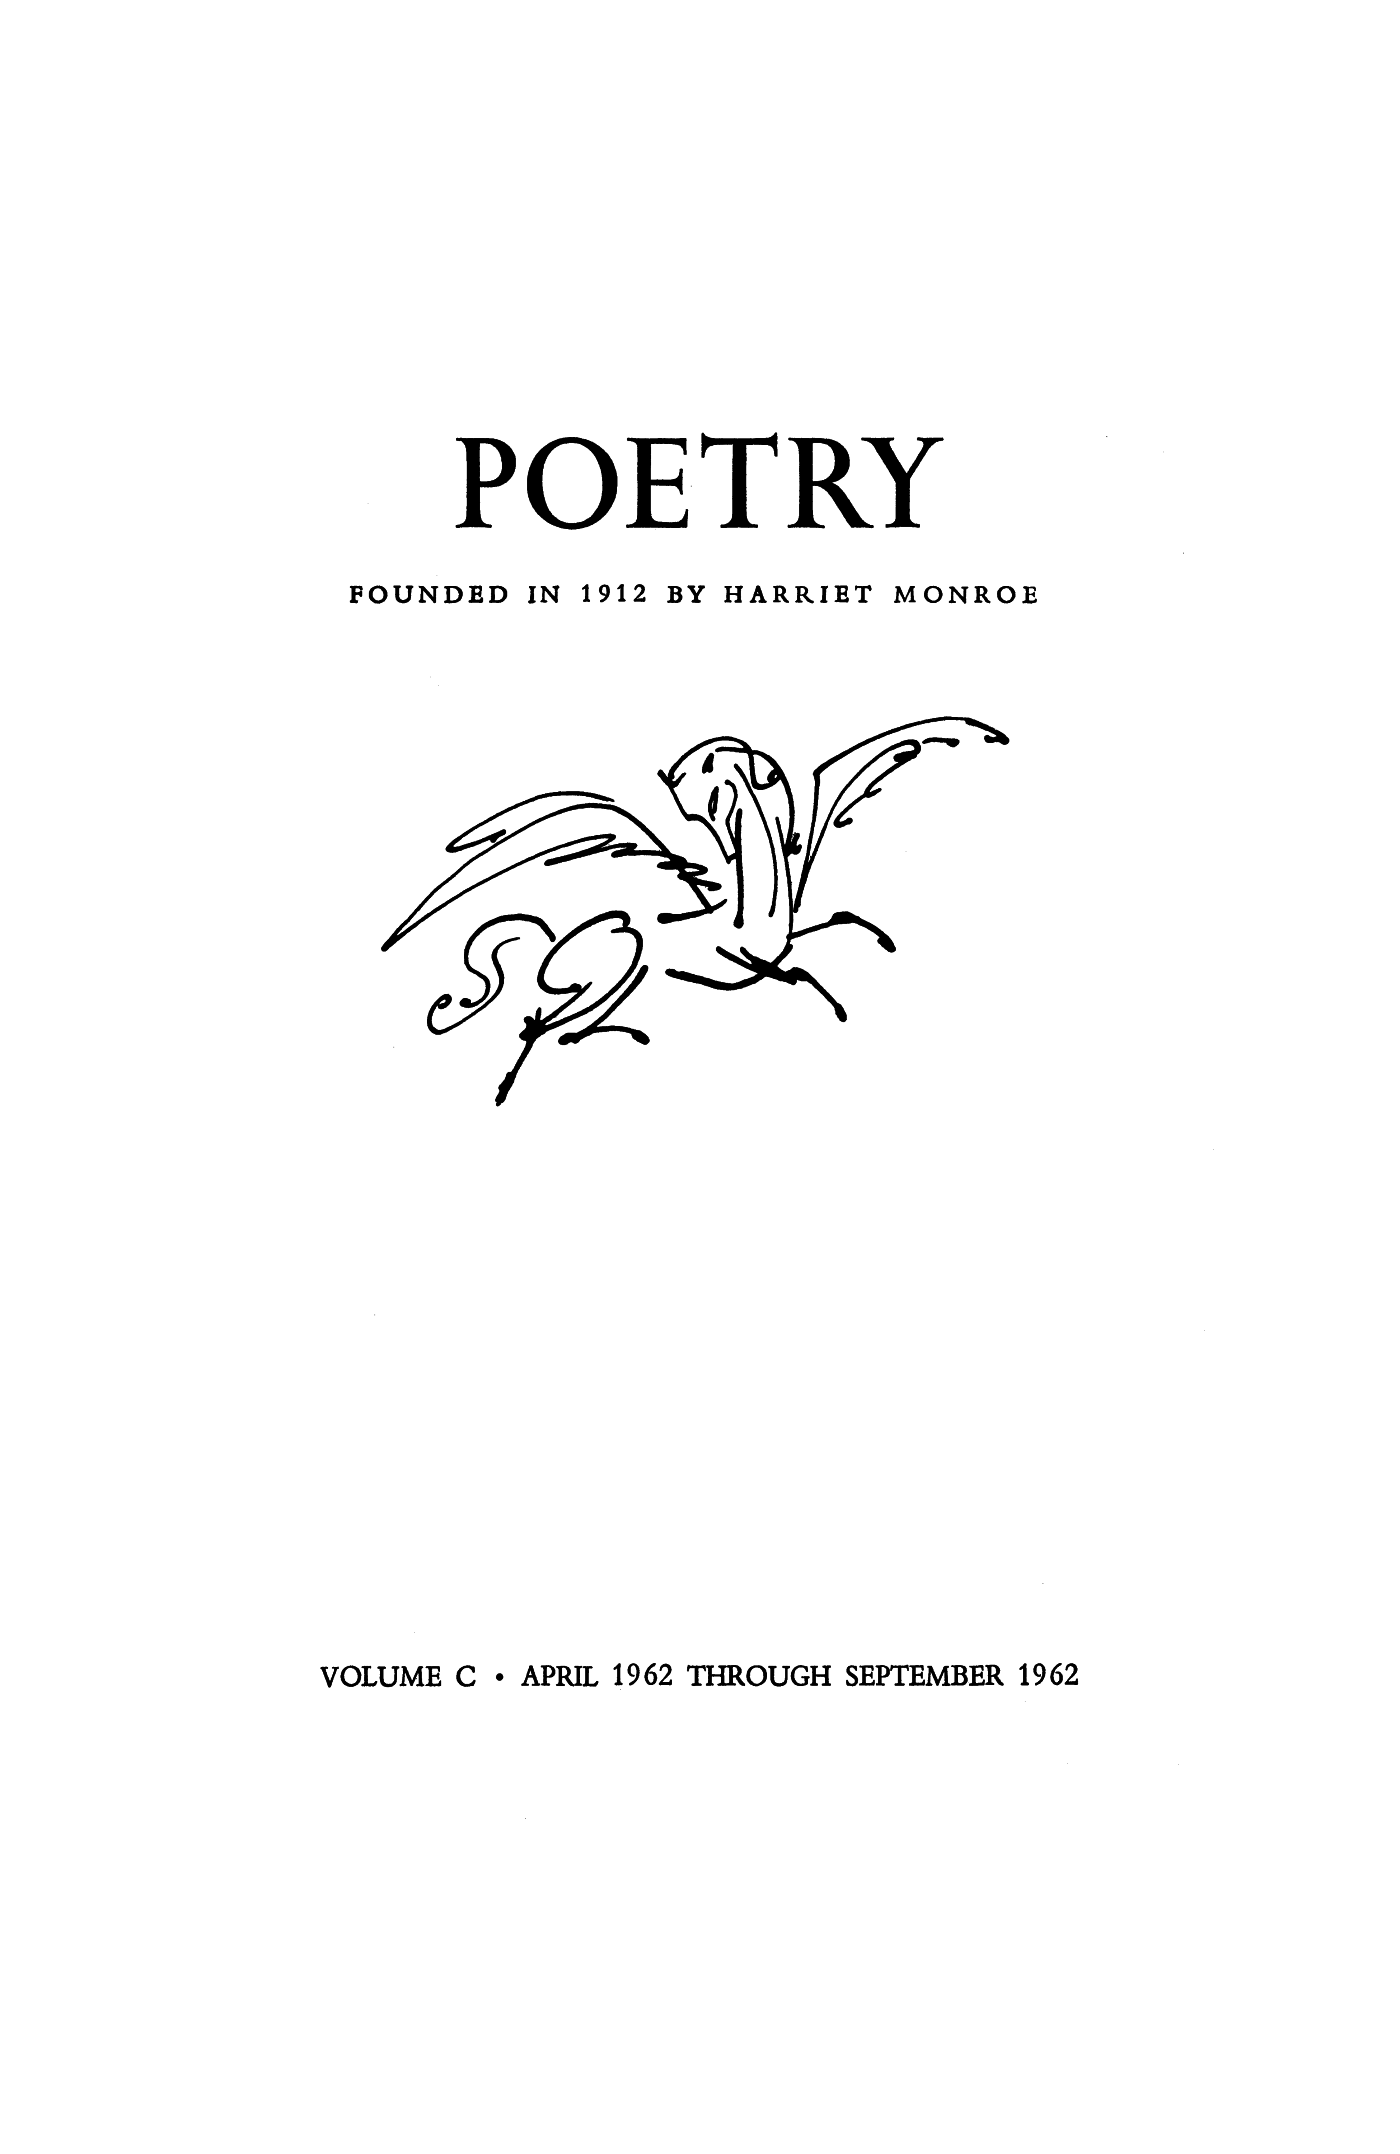 Open Form In Poetry